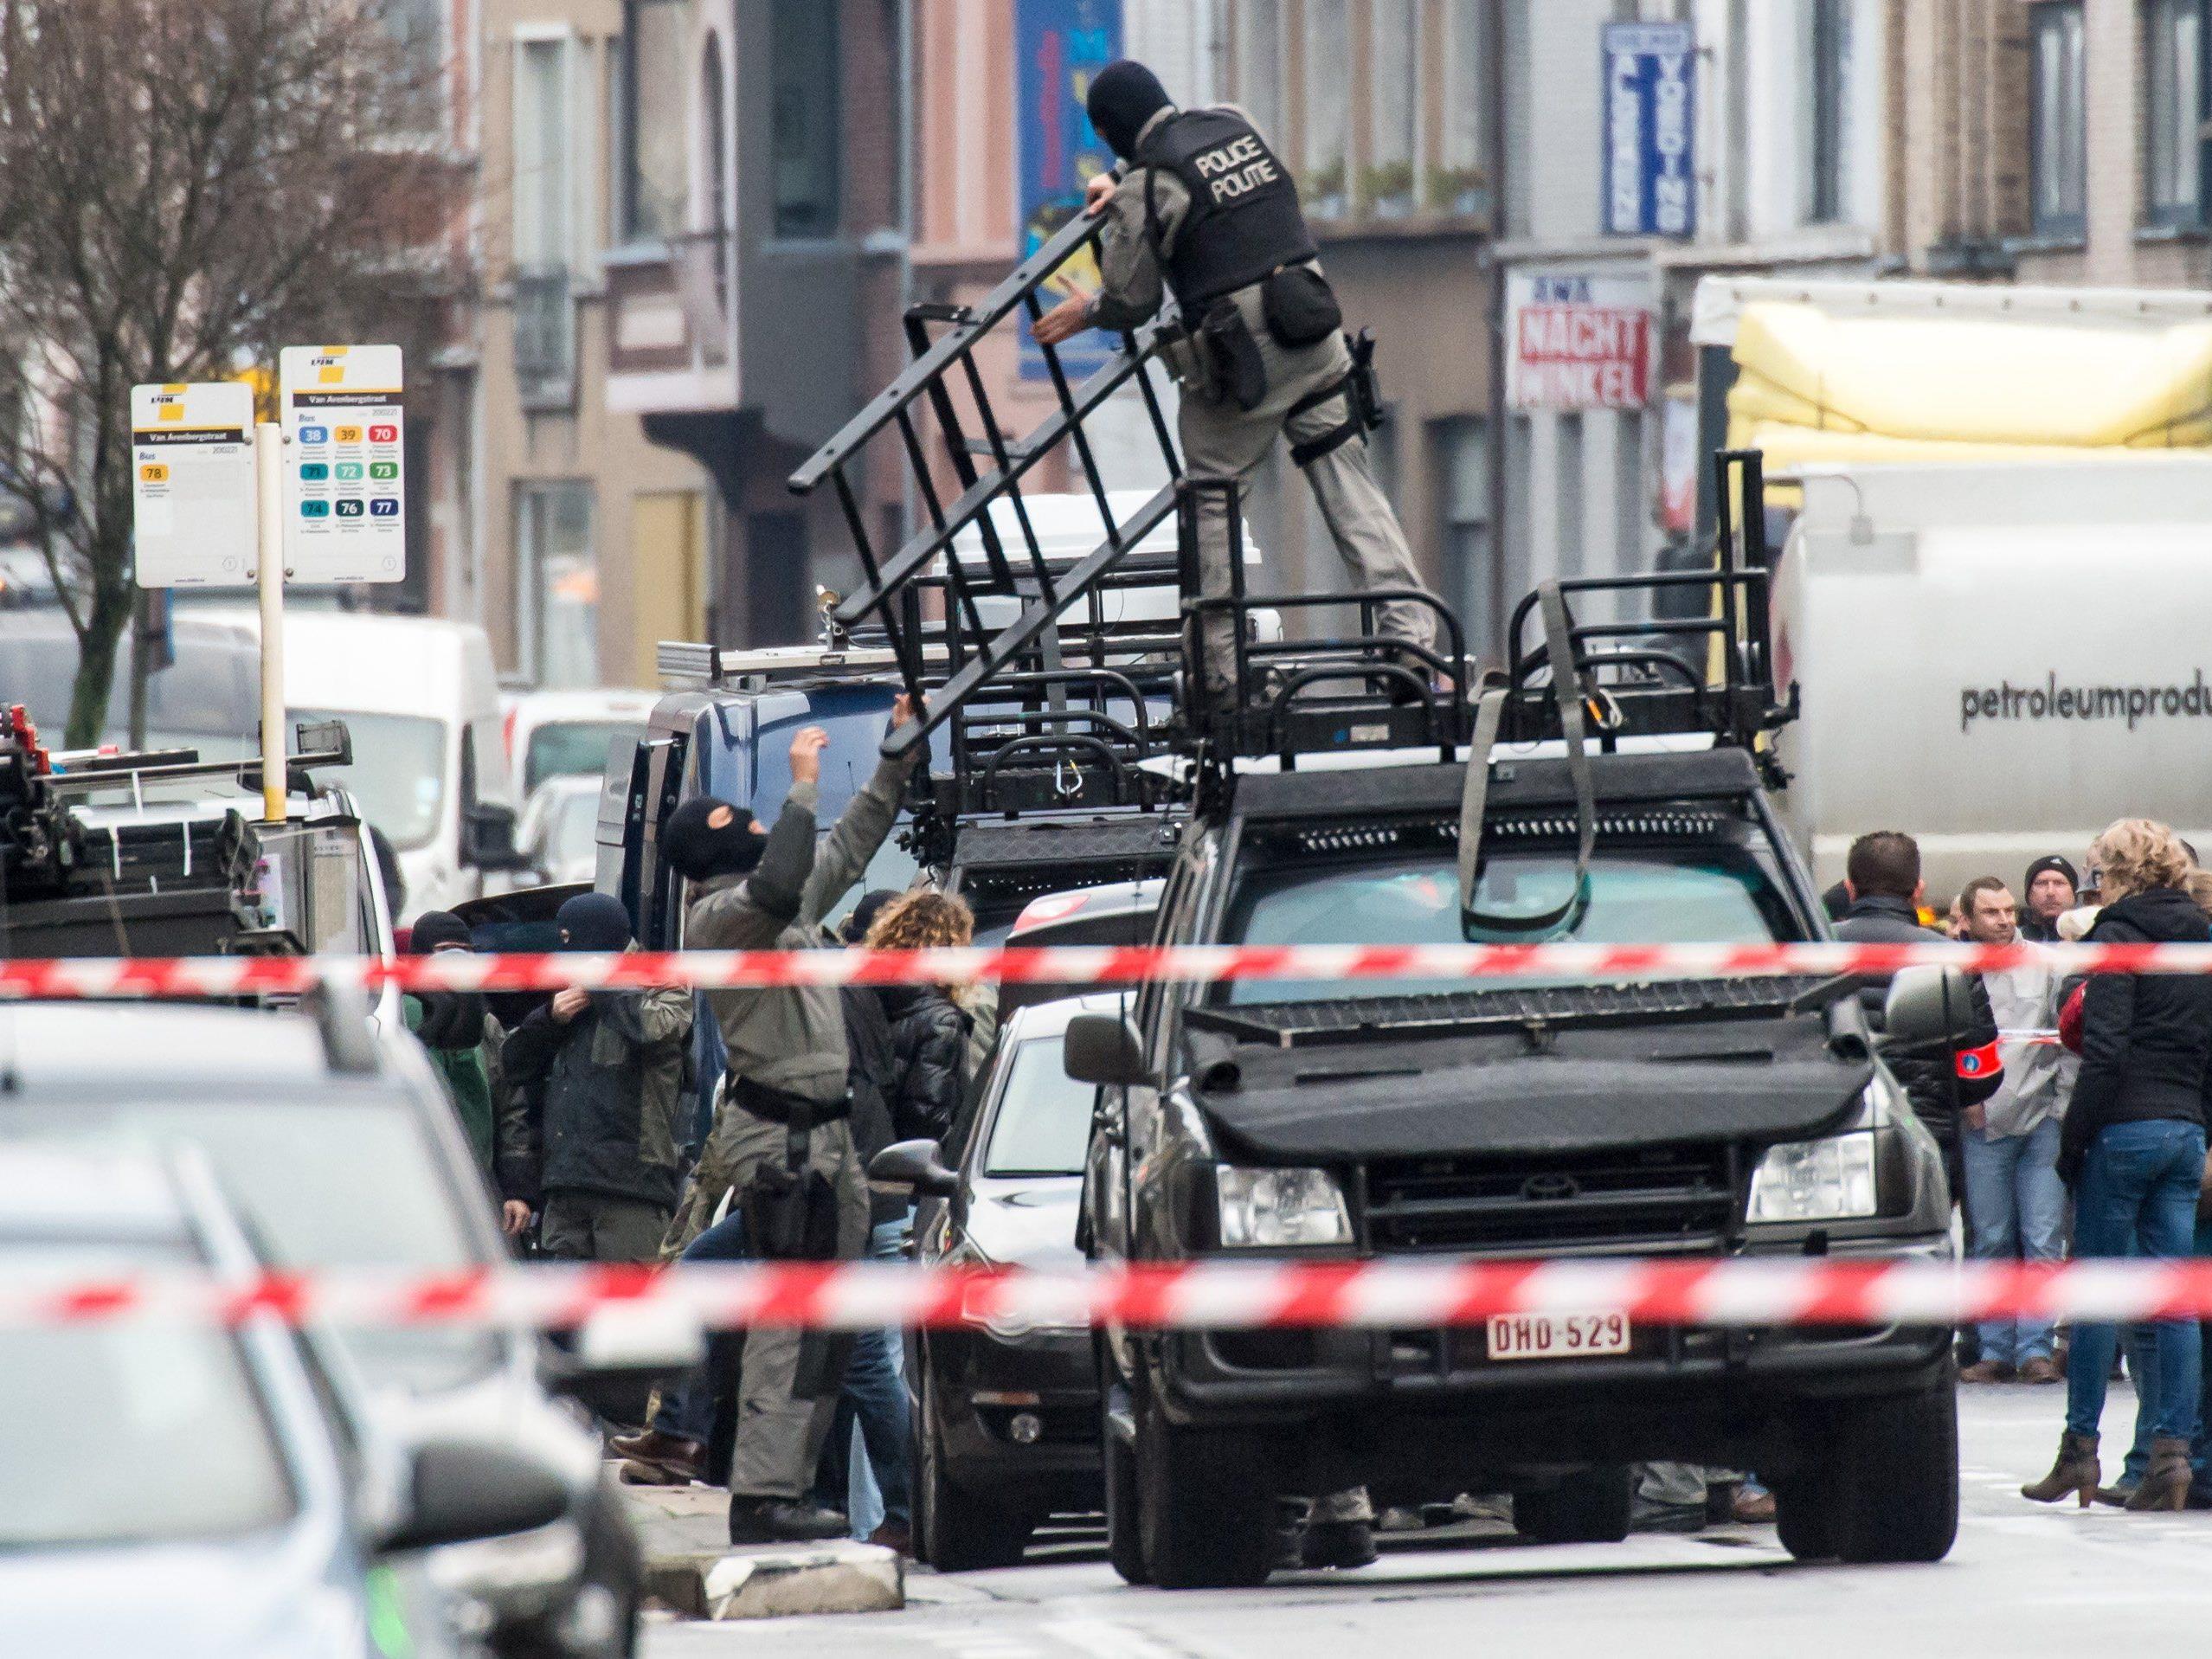 Geiselnahme in Gent: Polizei nimmt Tat "sehr ernst".